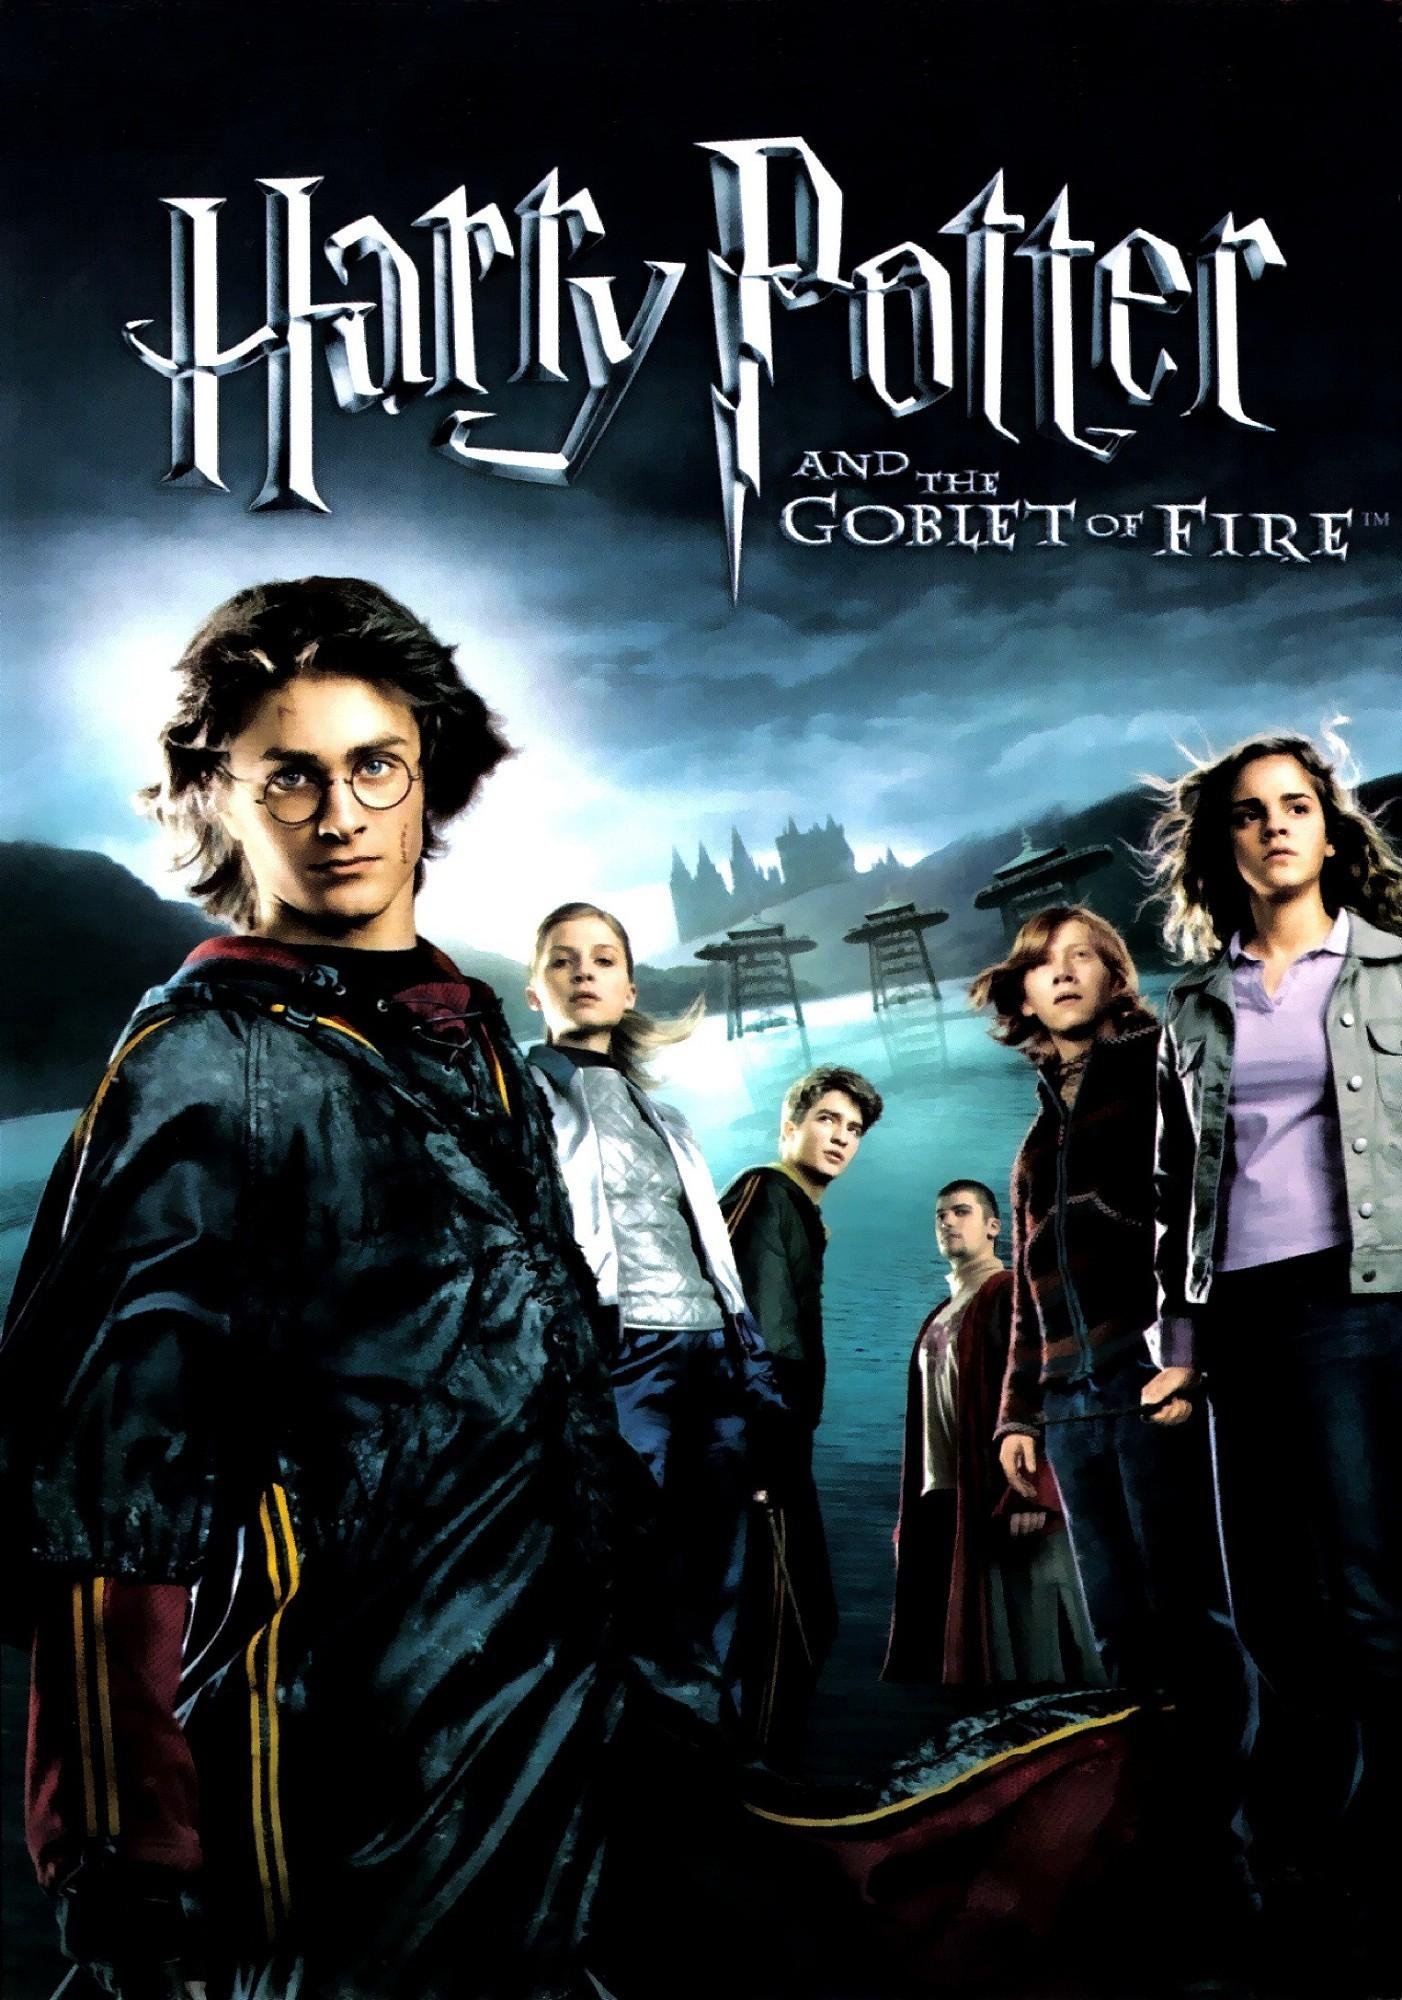 Poster of the movie Harry Potter et la coupe de feu